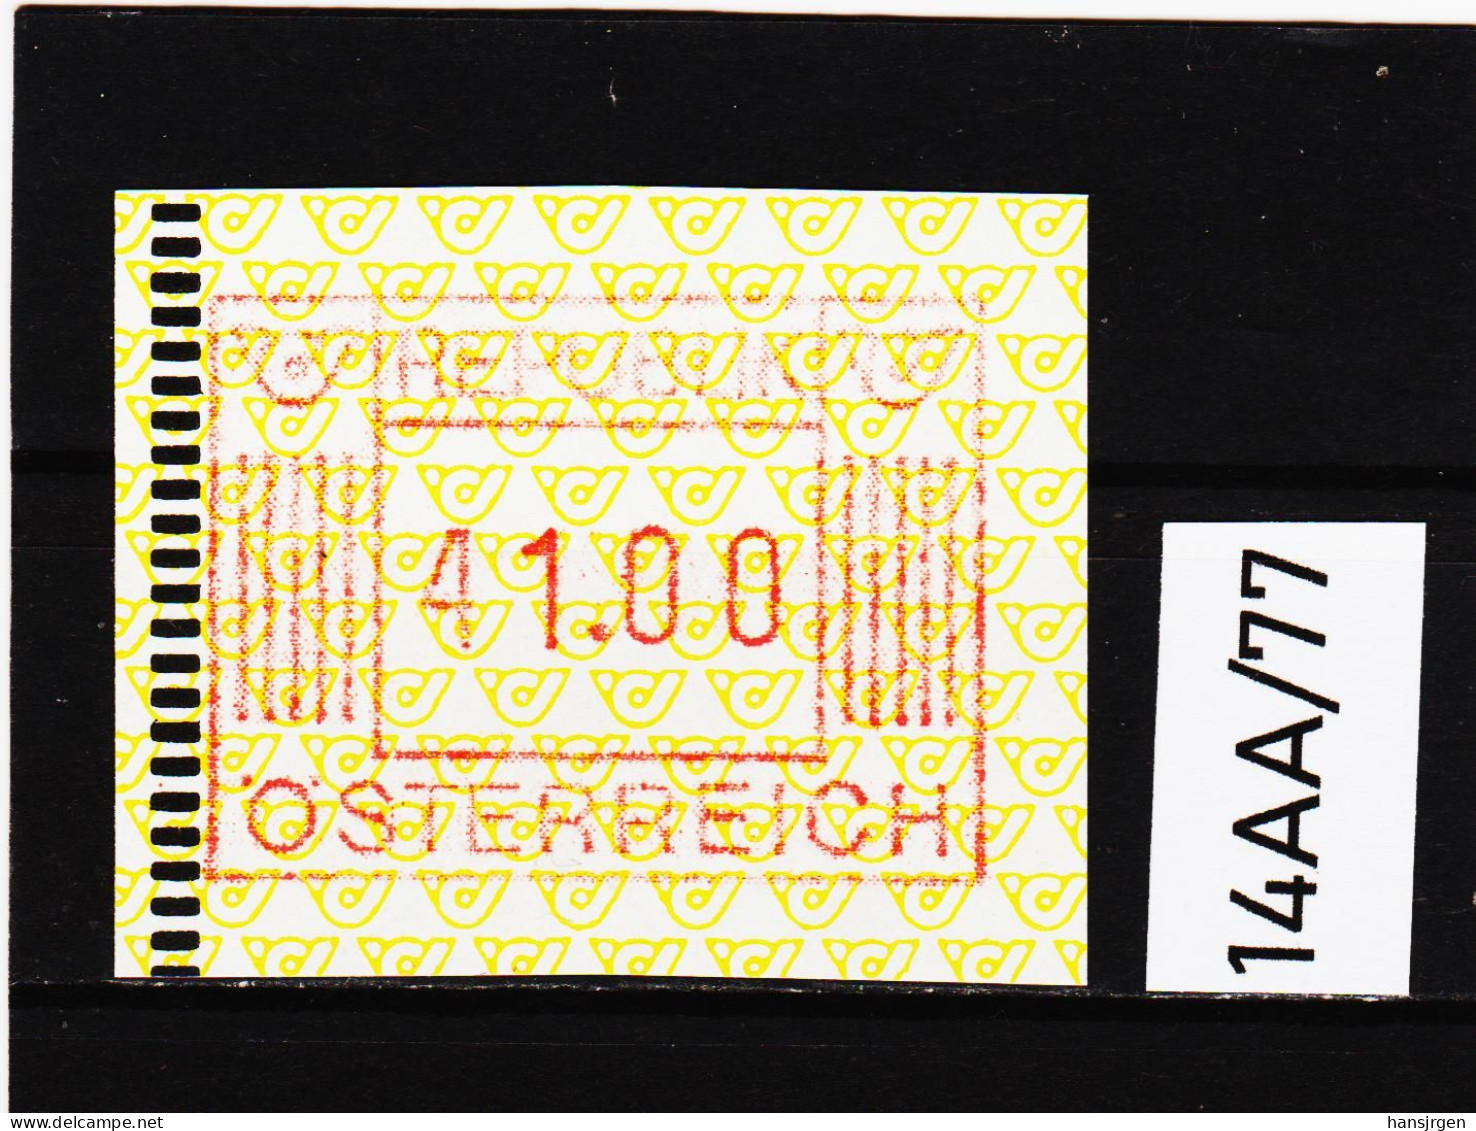 14AA/77  ÖSTERREICH 1983 AUTOMATENMARKEN 1. AUSGABE  41,00 SCHILLING   ** Postfrisch - Machine Labels [ATM]